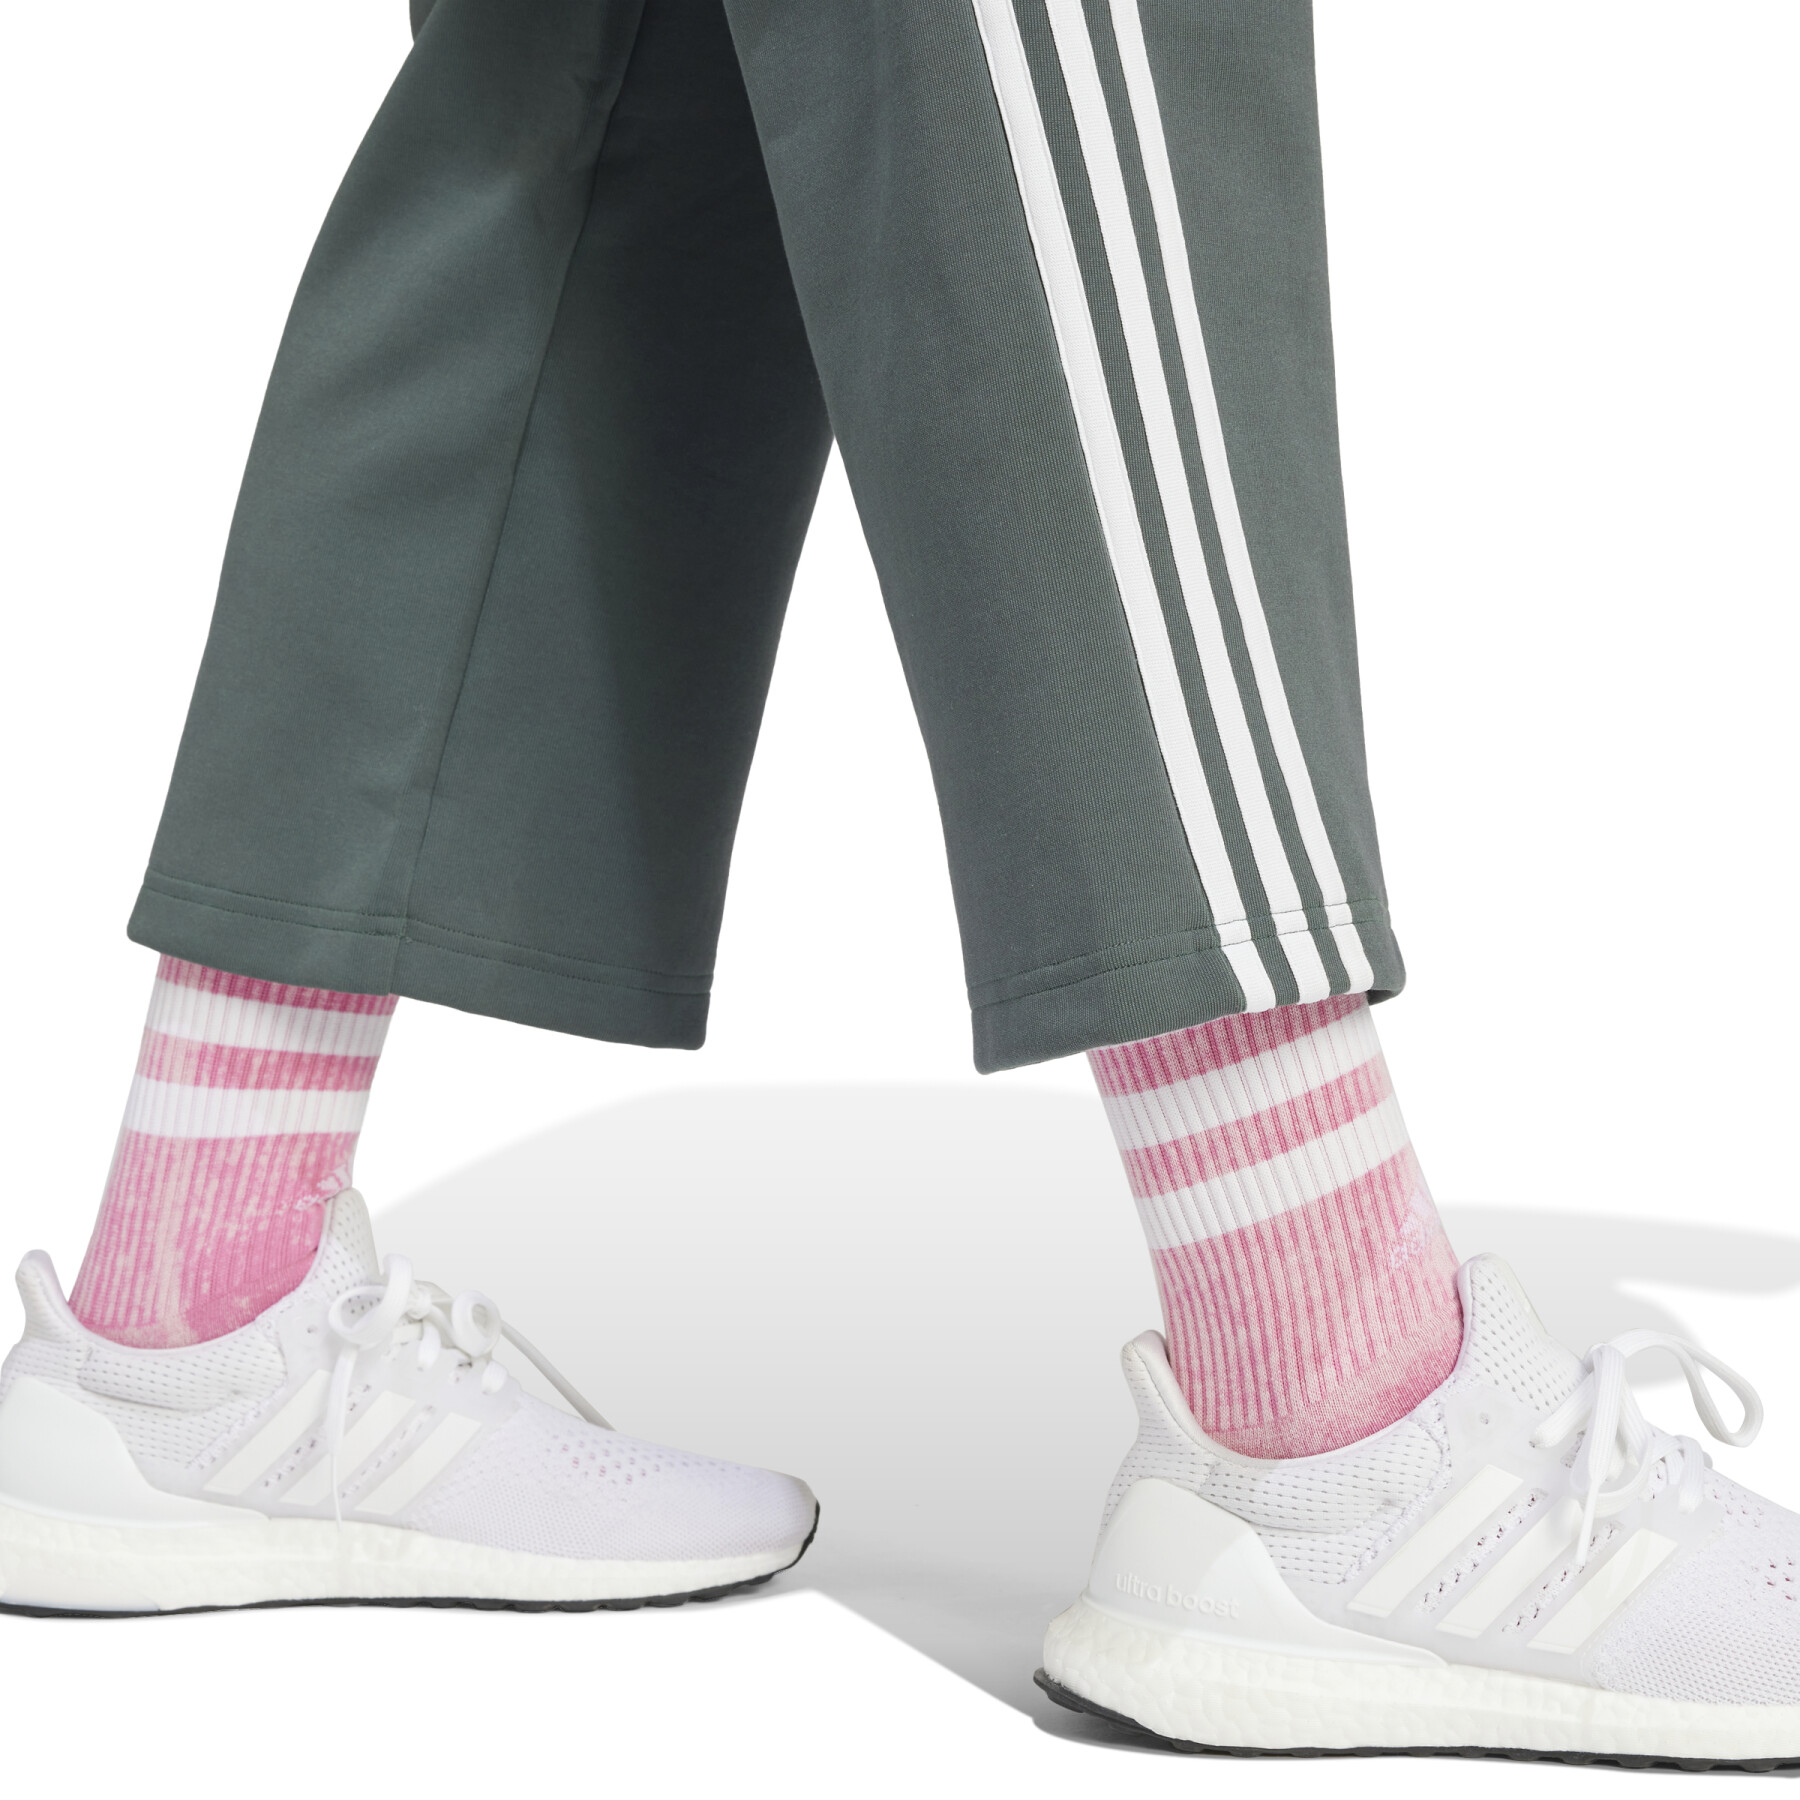 Women's jogging suit adidas Future Icons 3 Stripes Open Hem